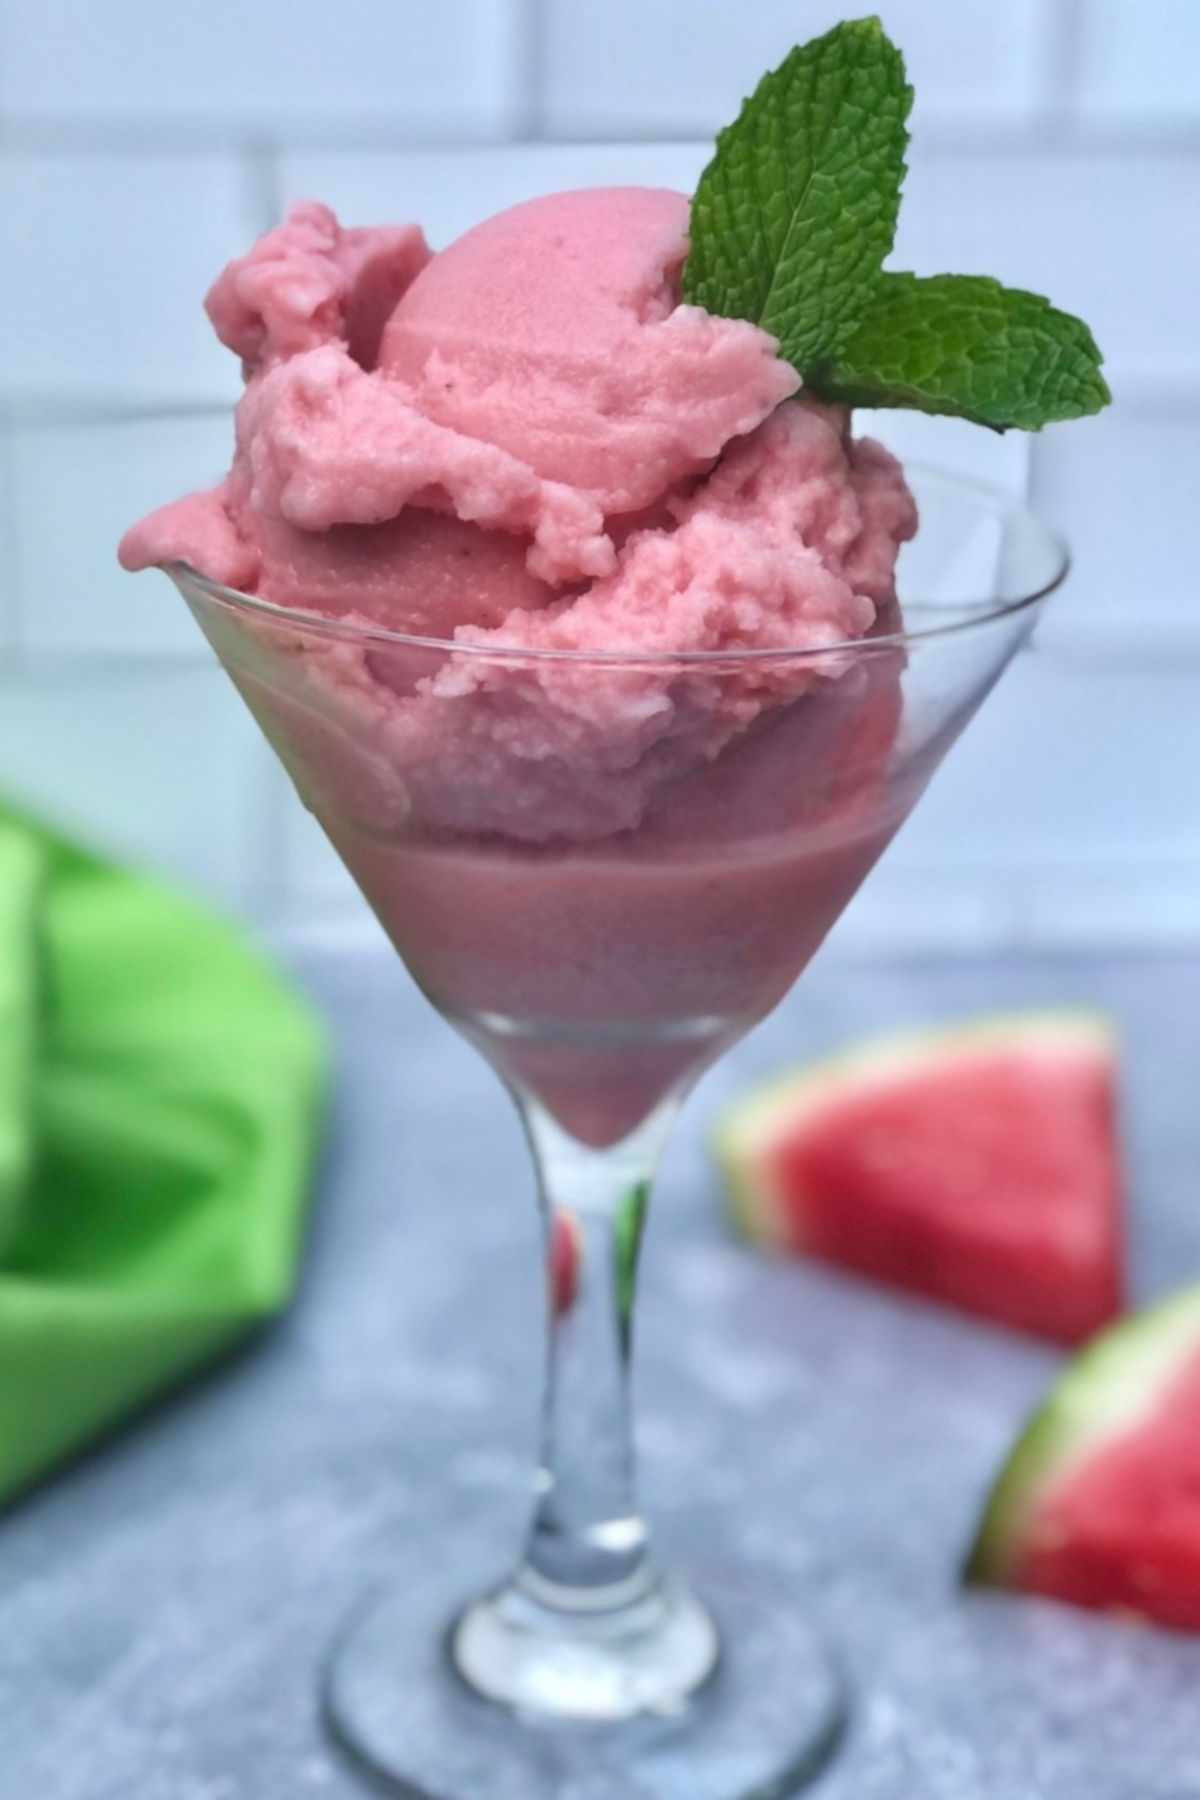 Watermelon ice cream in a glass.